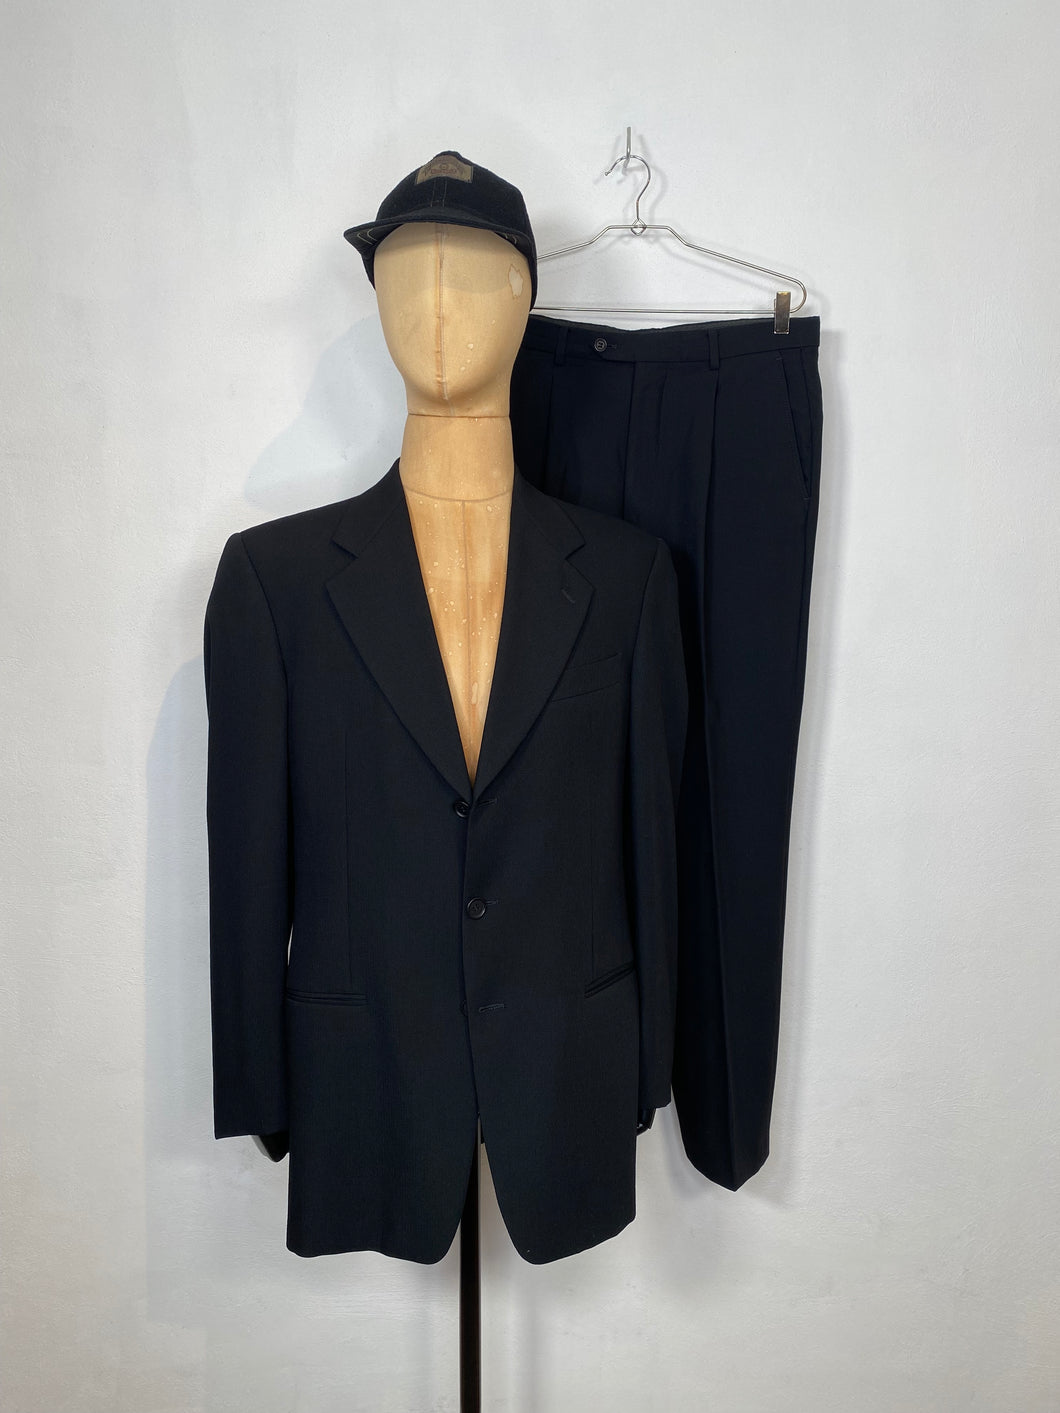 1982 Giorgio Armani LeCollezioni single breast suit dark